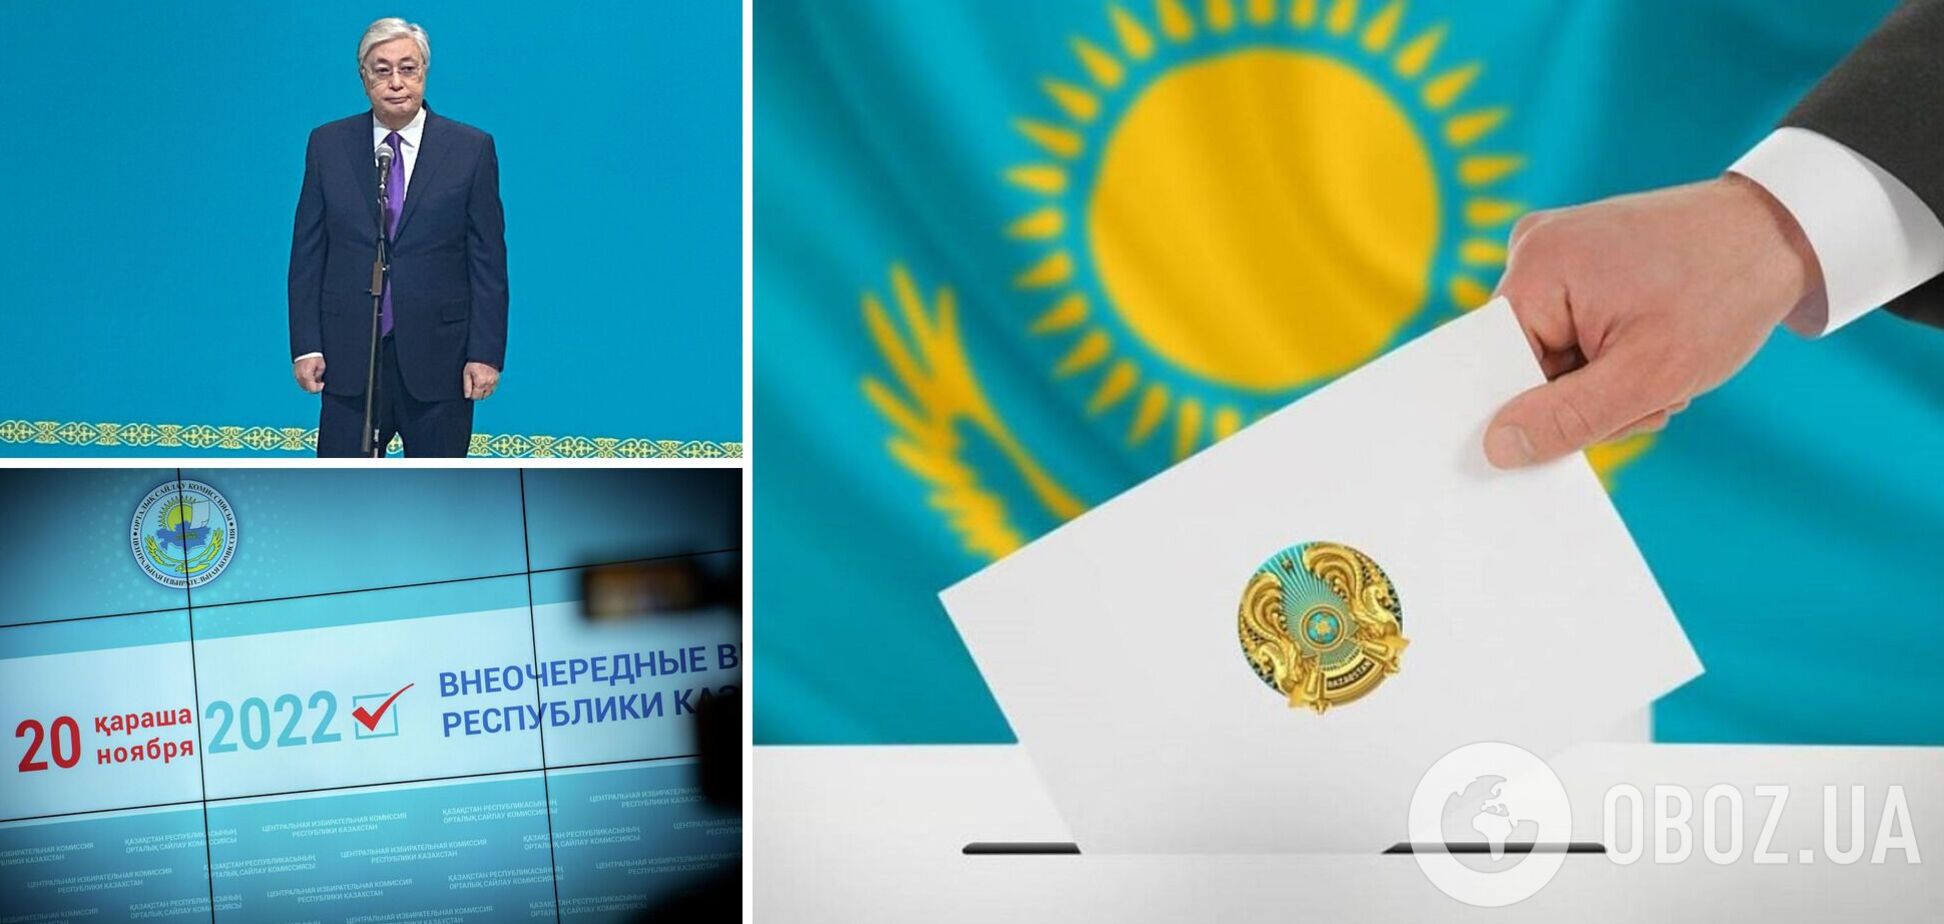 Токаев победил на выборах в Казахстане: в ЦИК объявили окончательные результаты голосования